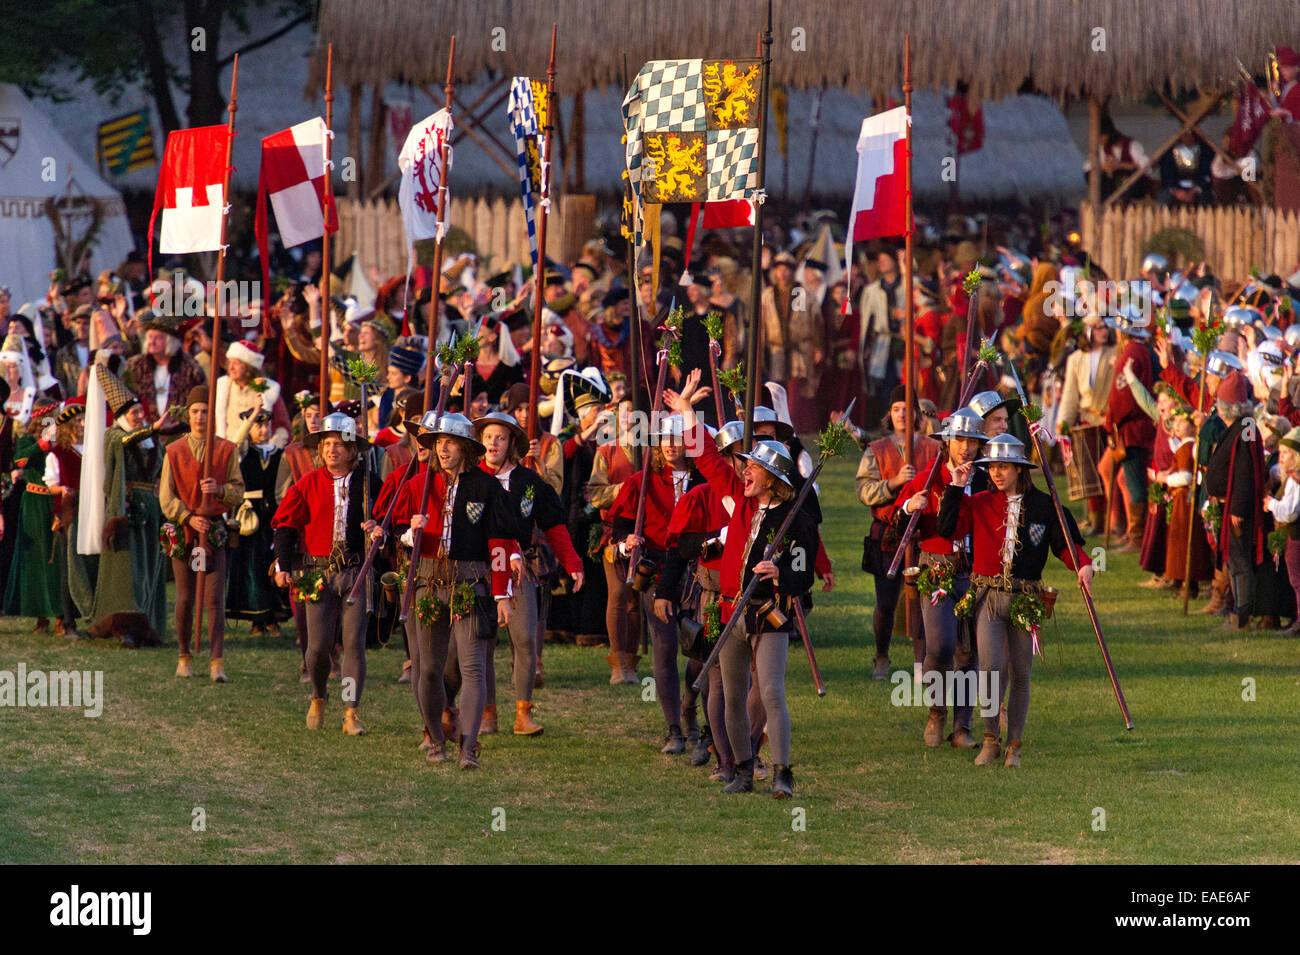 Gerichtsvollzieher und Fahnenträger in mittelalterlichen Kostümen auf dem Messegelände, festliche Spiele, "Landshuter Hochzeit", Landshut Stockfoto